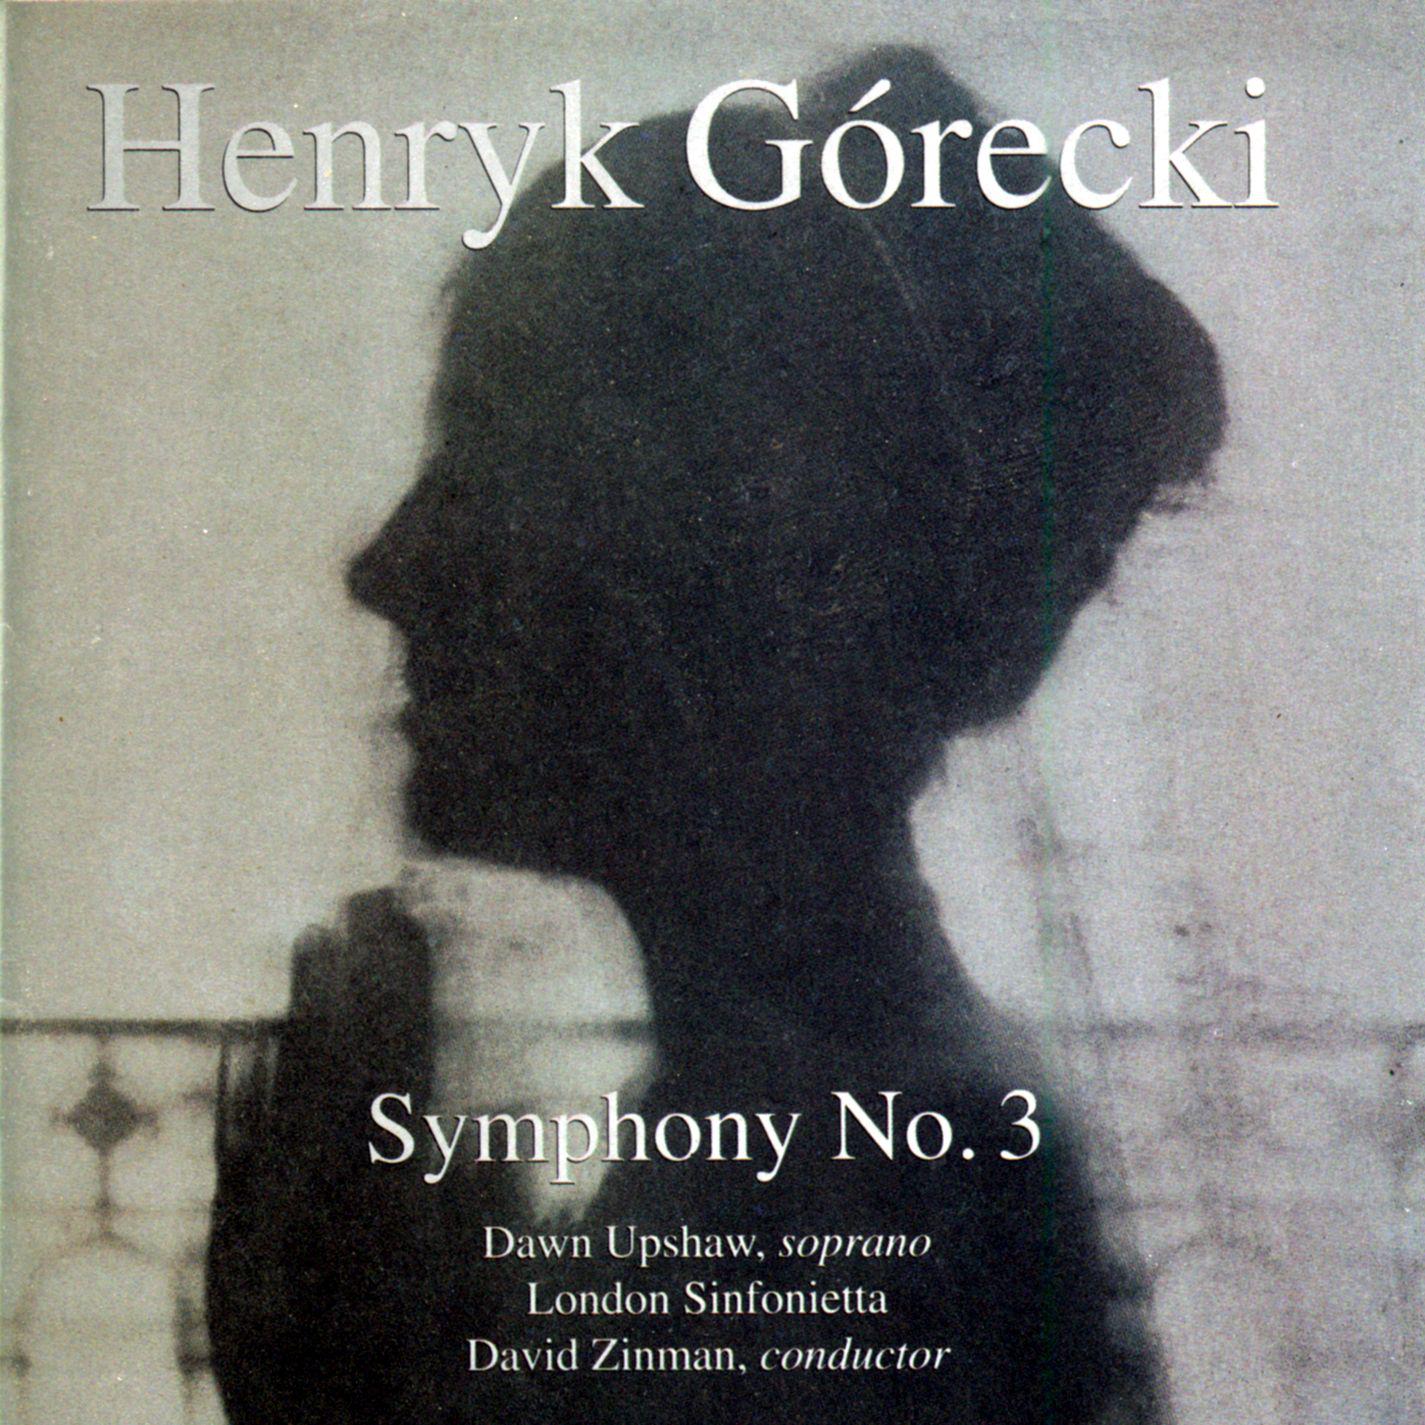 Go recki: Symphony No. 3